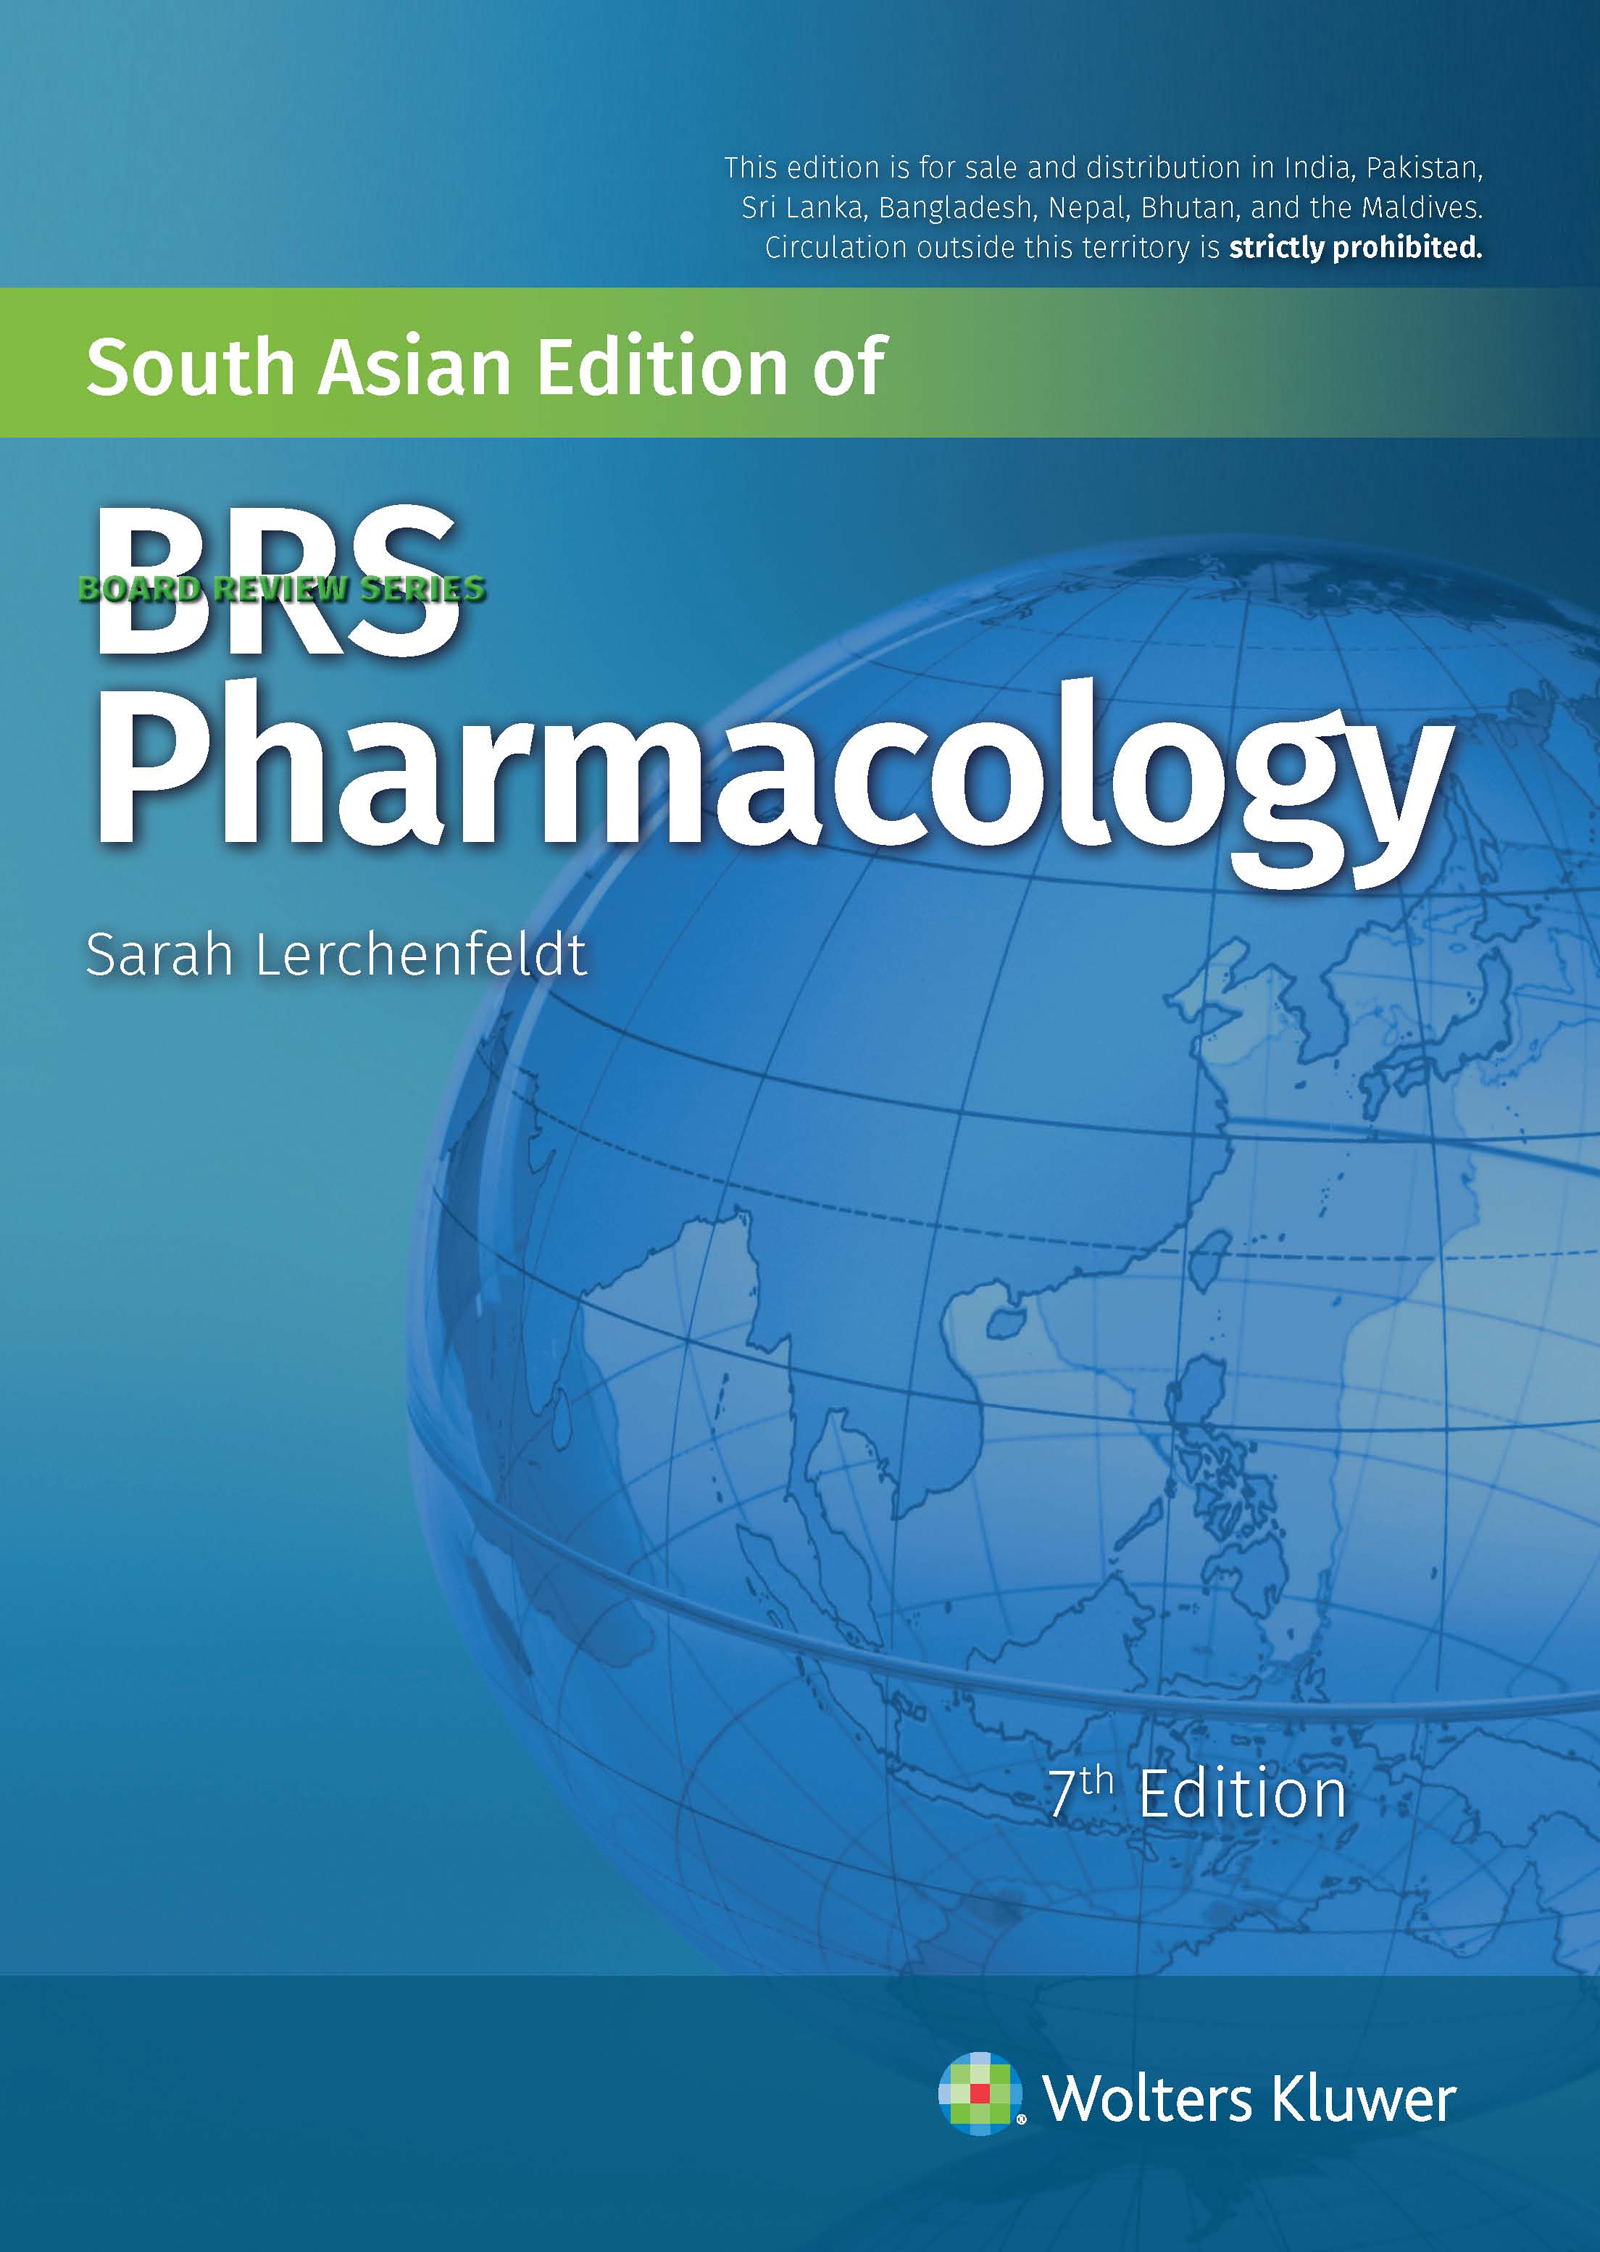 brs-pharmacology-7e